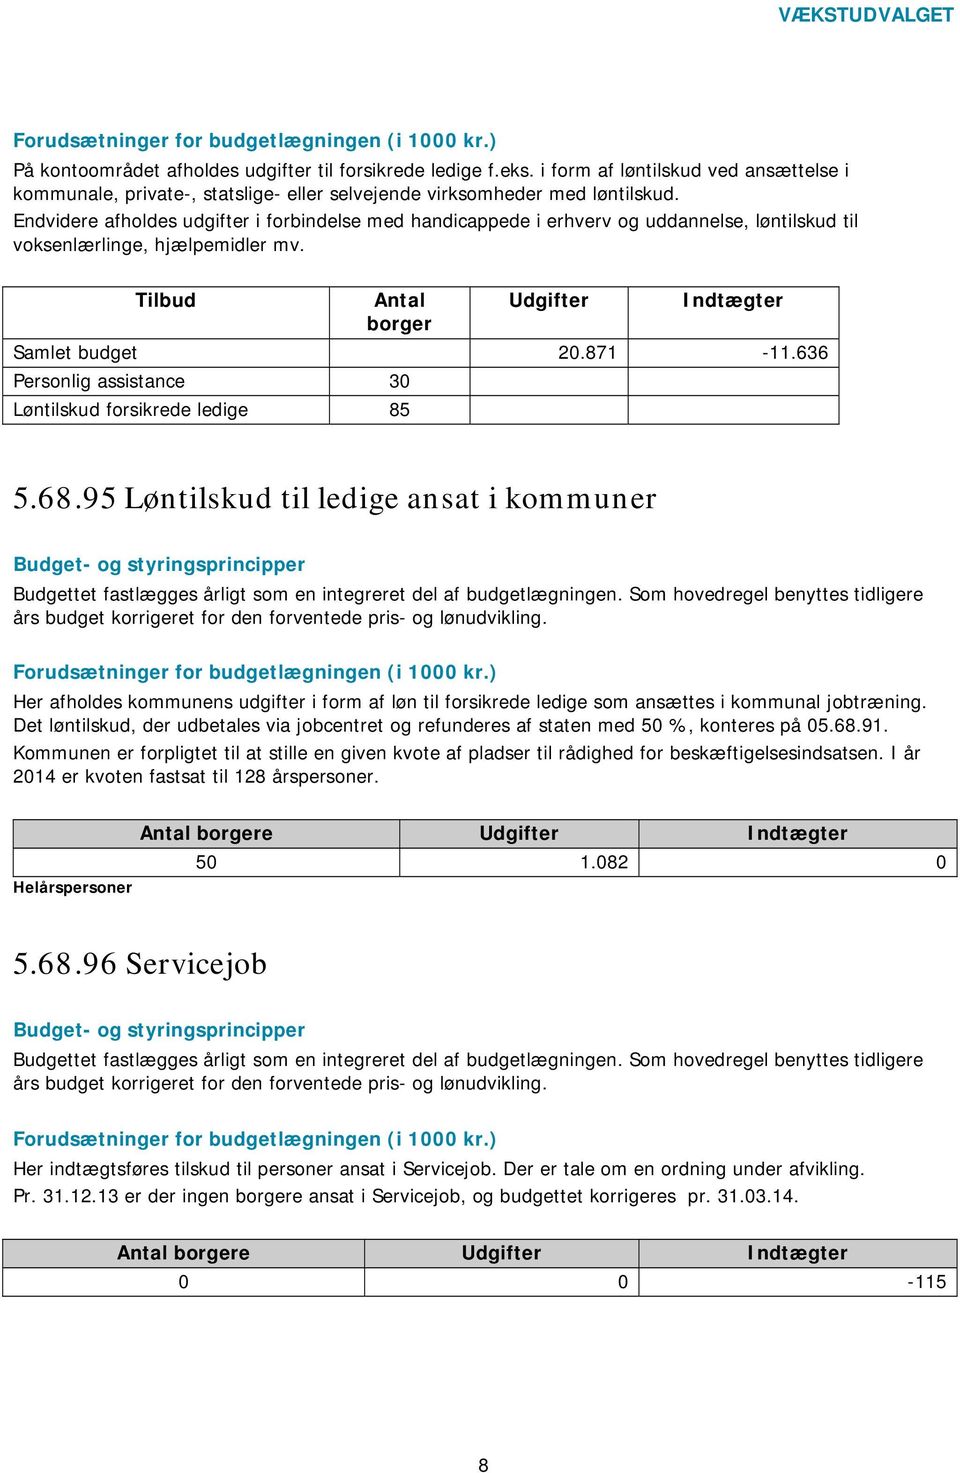 636 Personlig assistance 30 Løntilskud forsikrede ledige 85 5.68.